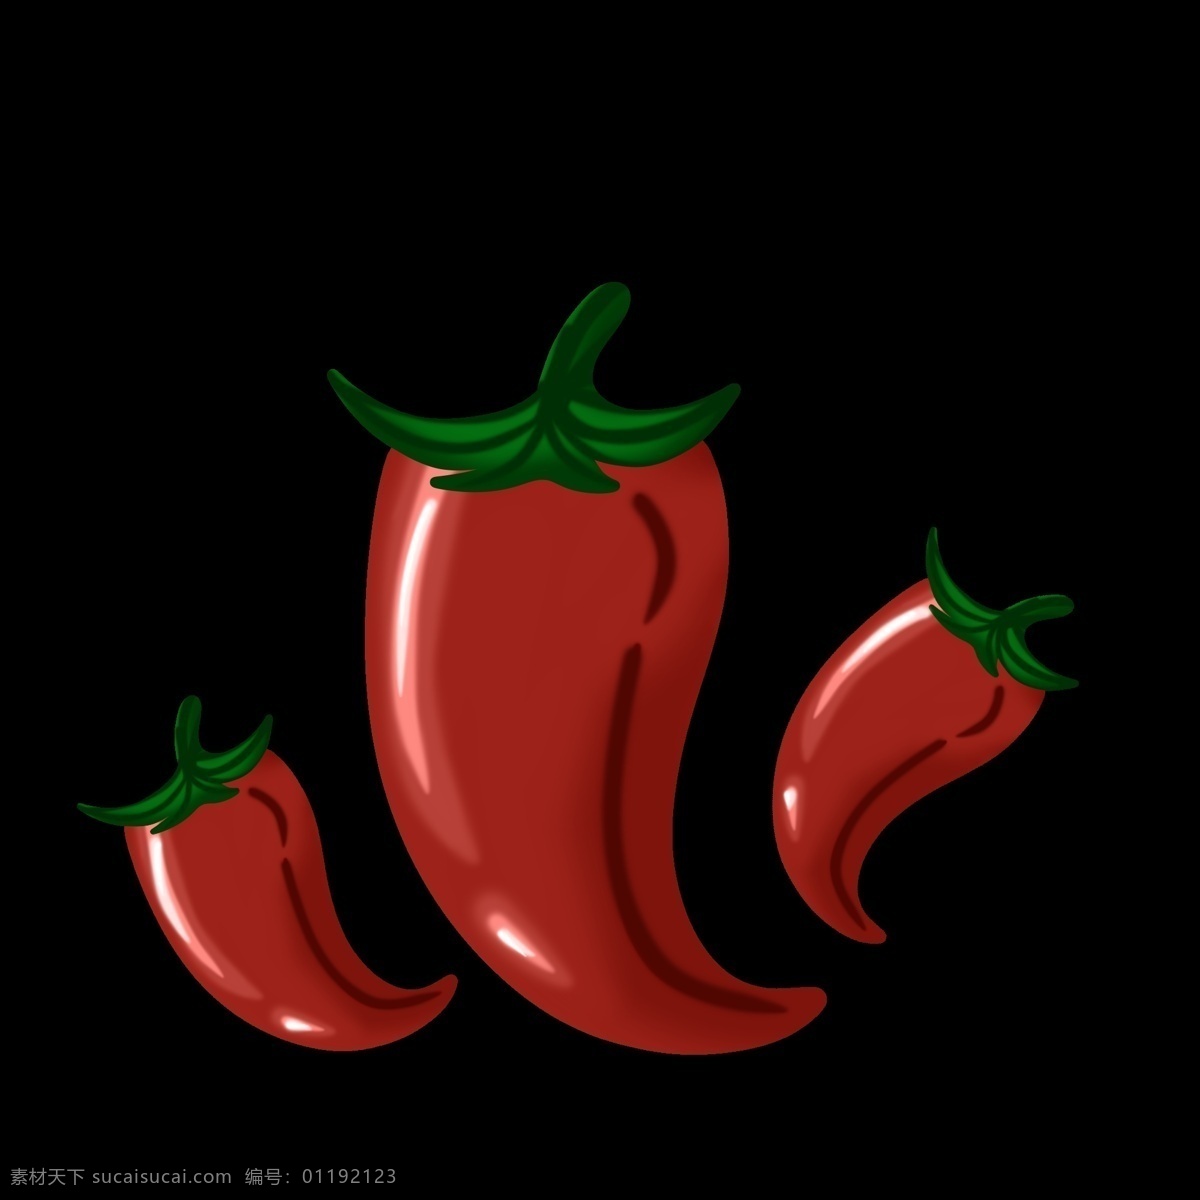 辣椒 辣子 上涨 红色 辣味 生长 自然 种植 蔬菜 辣 朝天椒 调味品 食物 叶子 绿色食品 健康 火辣 卡通 装饰 装饰画